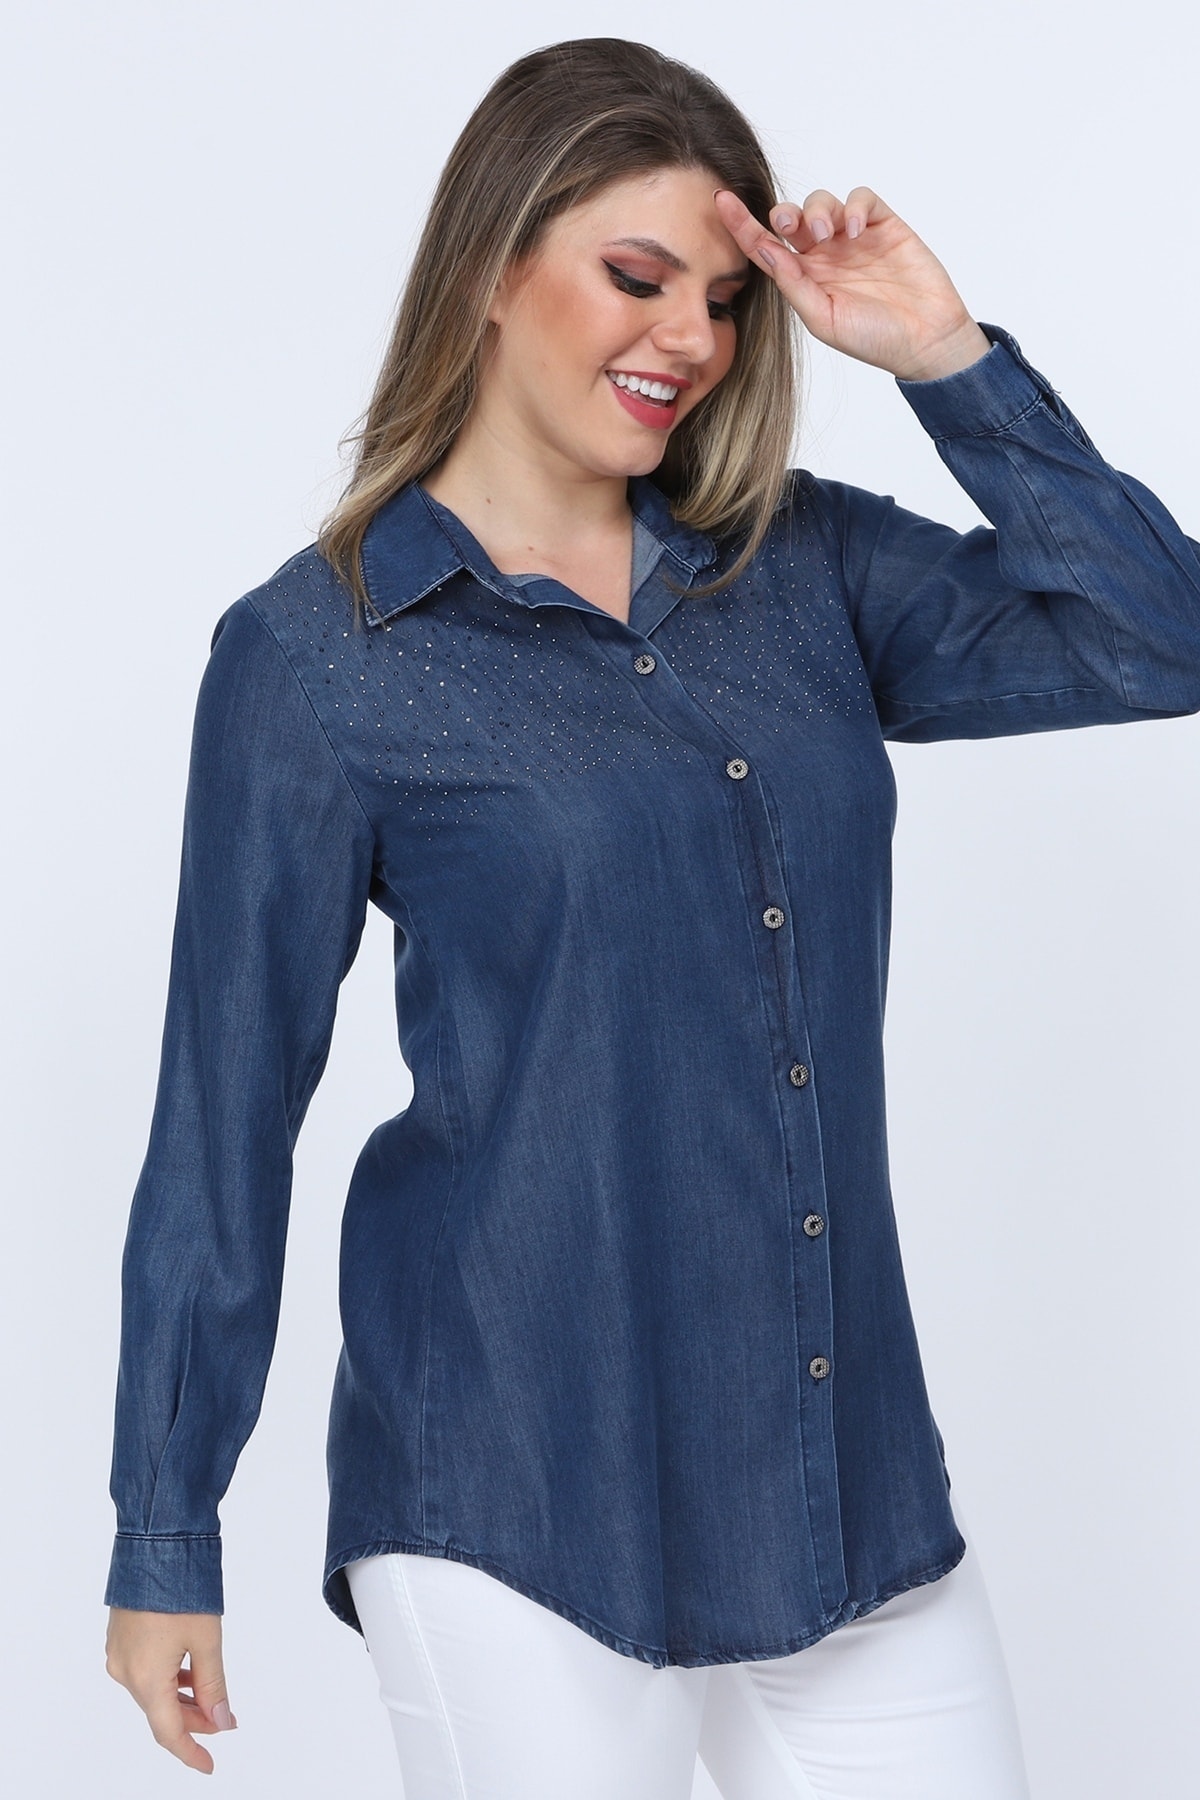 Gül Moda Kadın Mavi Büyük Beden Taş Işlemeli Kot Gömlek G015